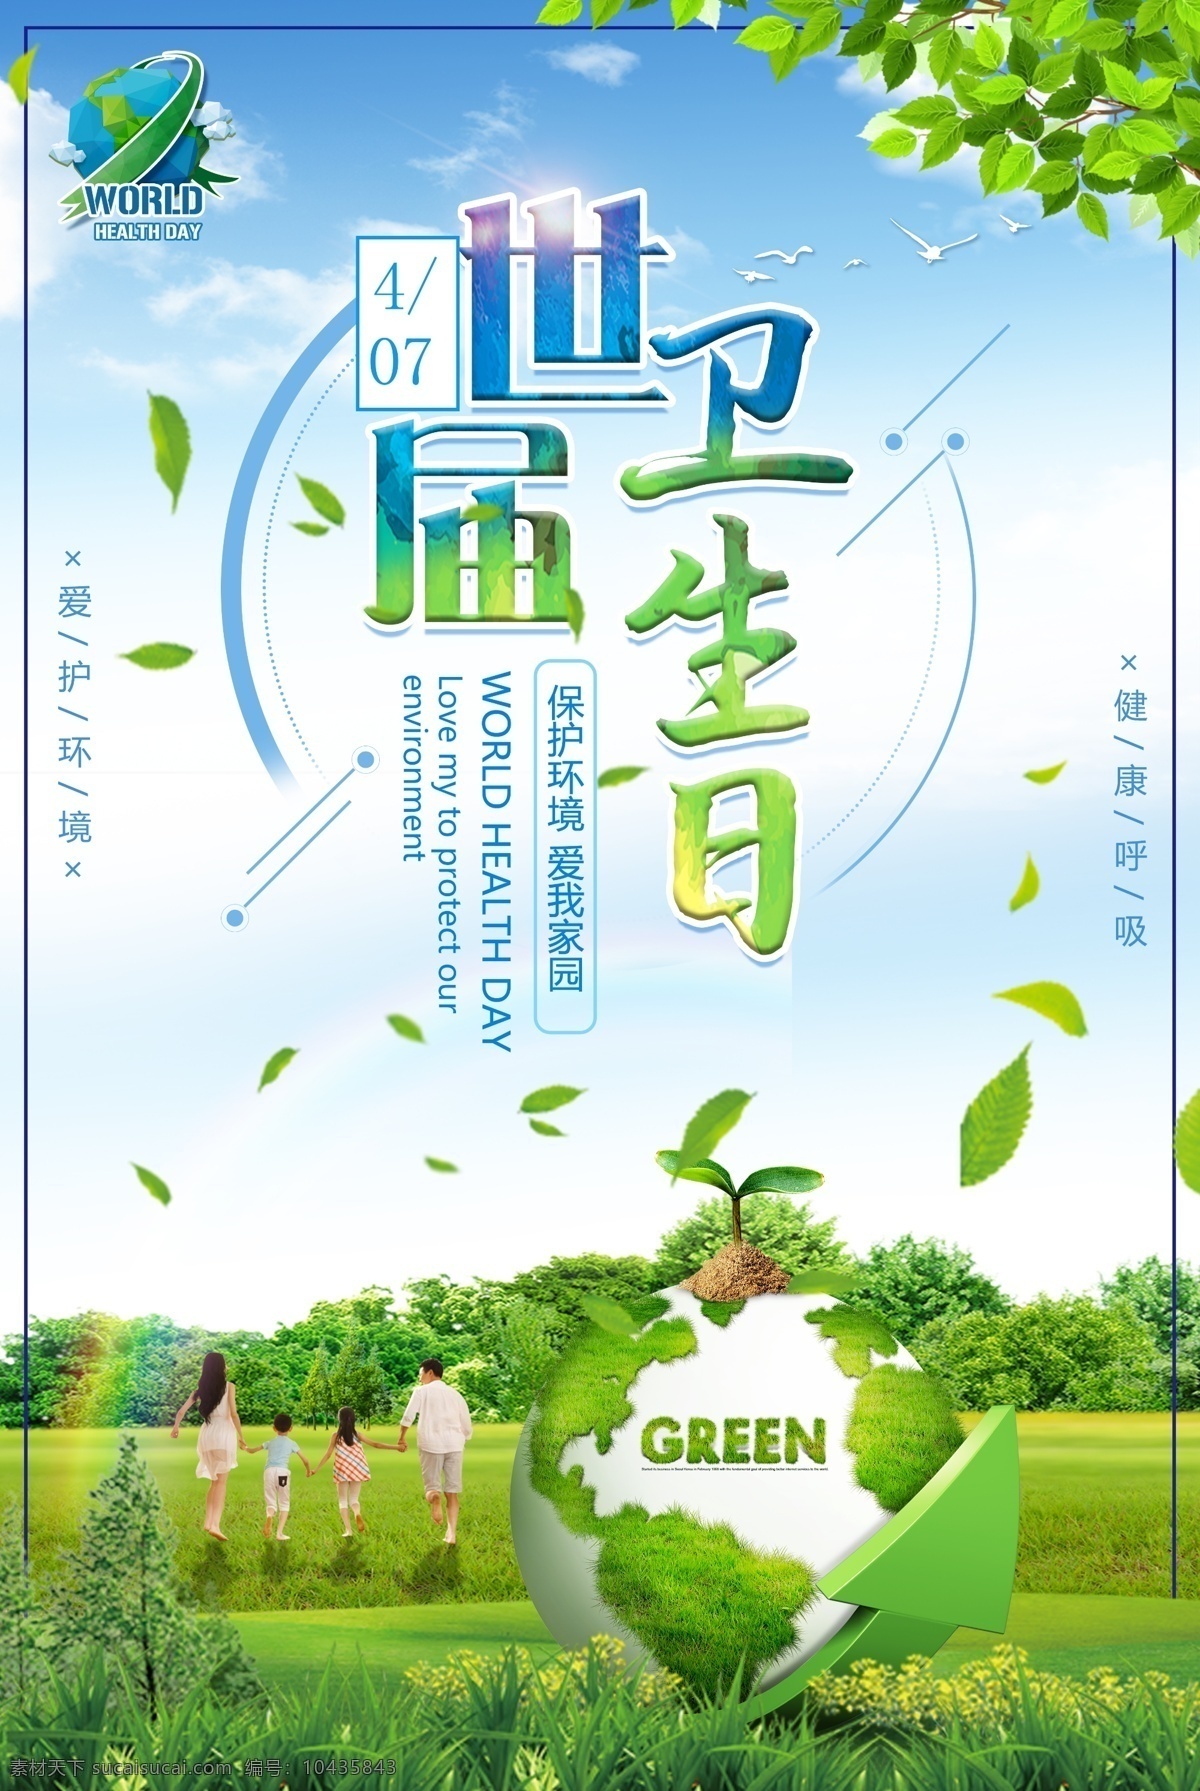 世界 卫生日 环保 海报 绿色环保 生态海报 爱护环境 植树节 环境卫生海报 创卫 世界地球日 节能环保 海报展板